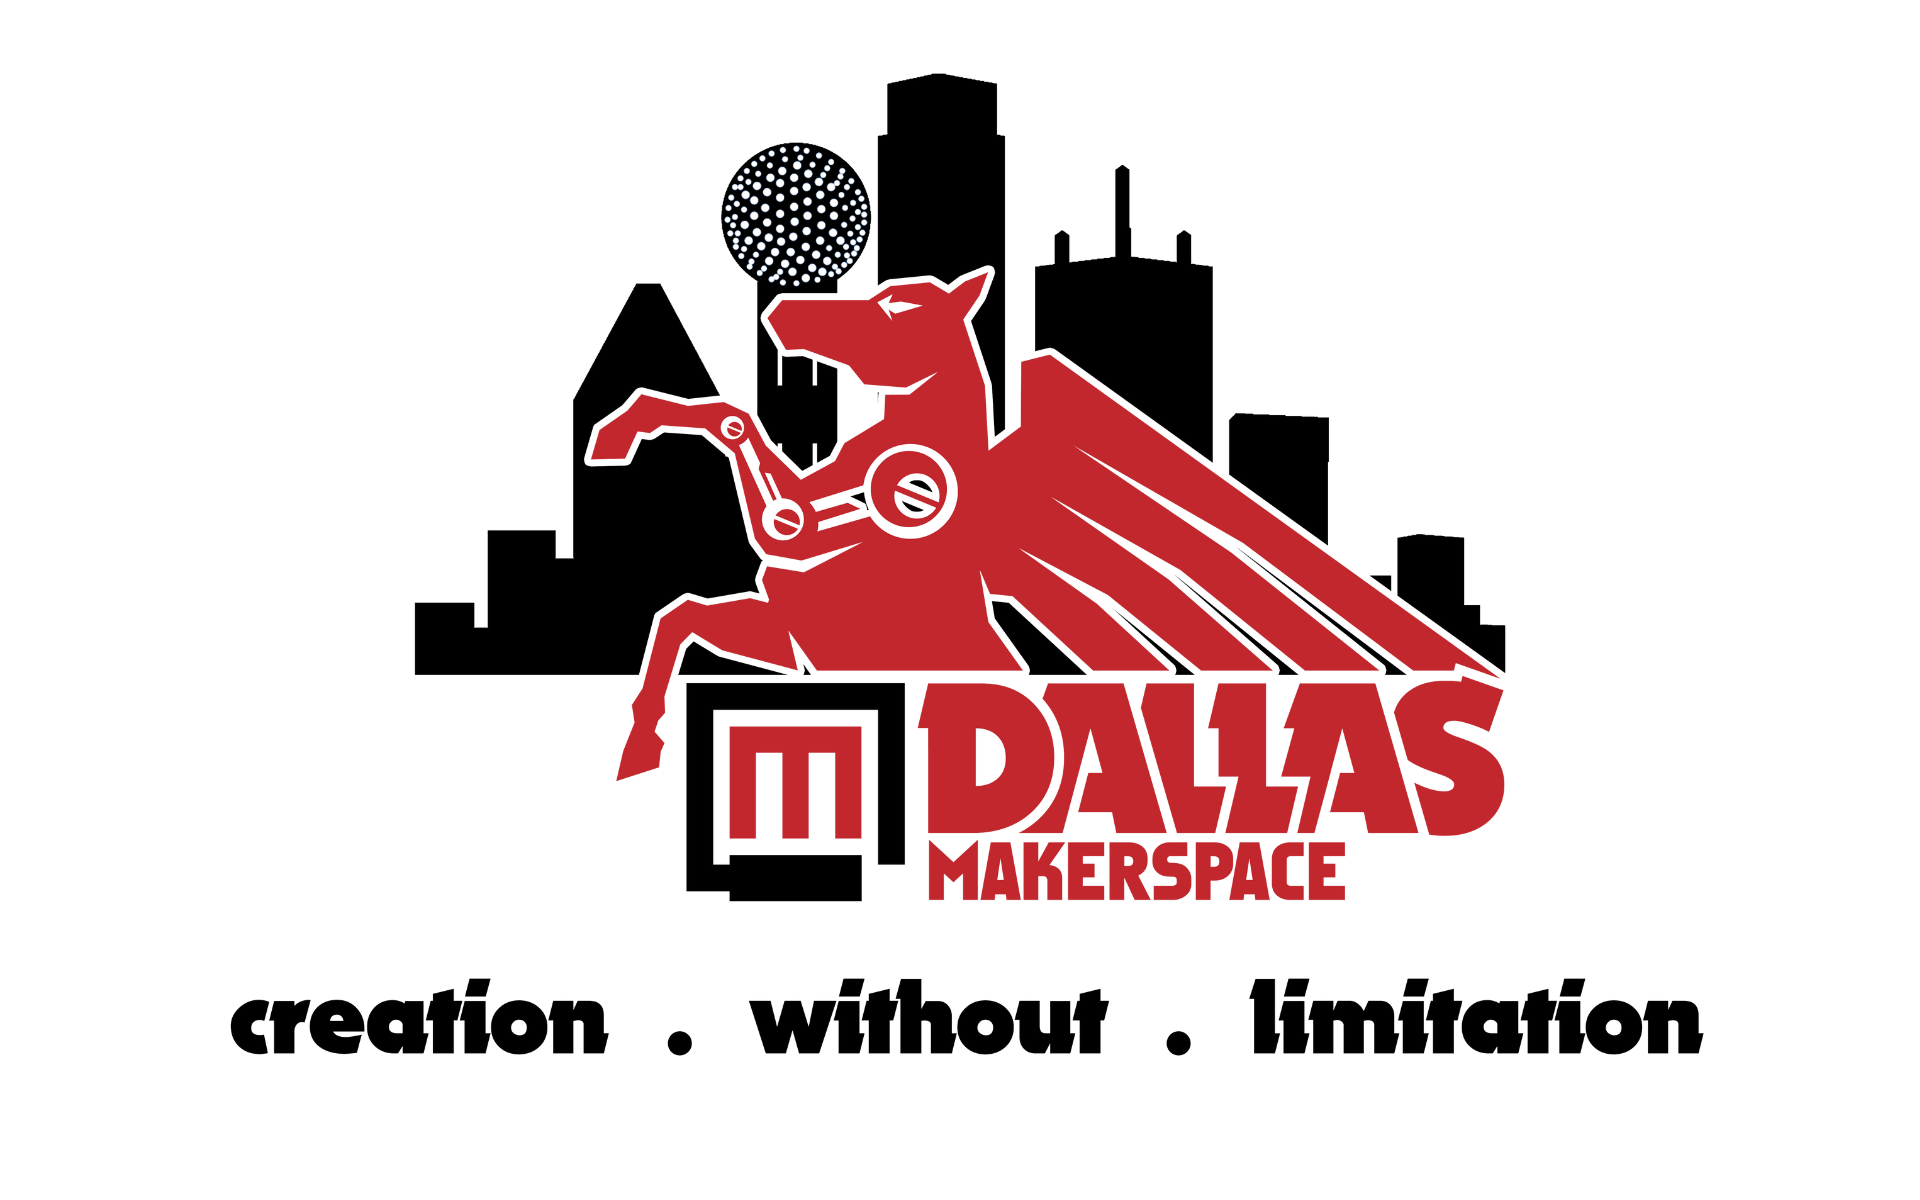 Dallas Makerspace